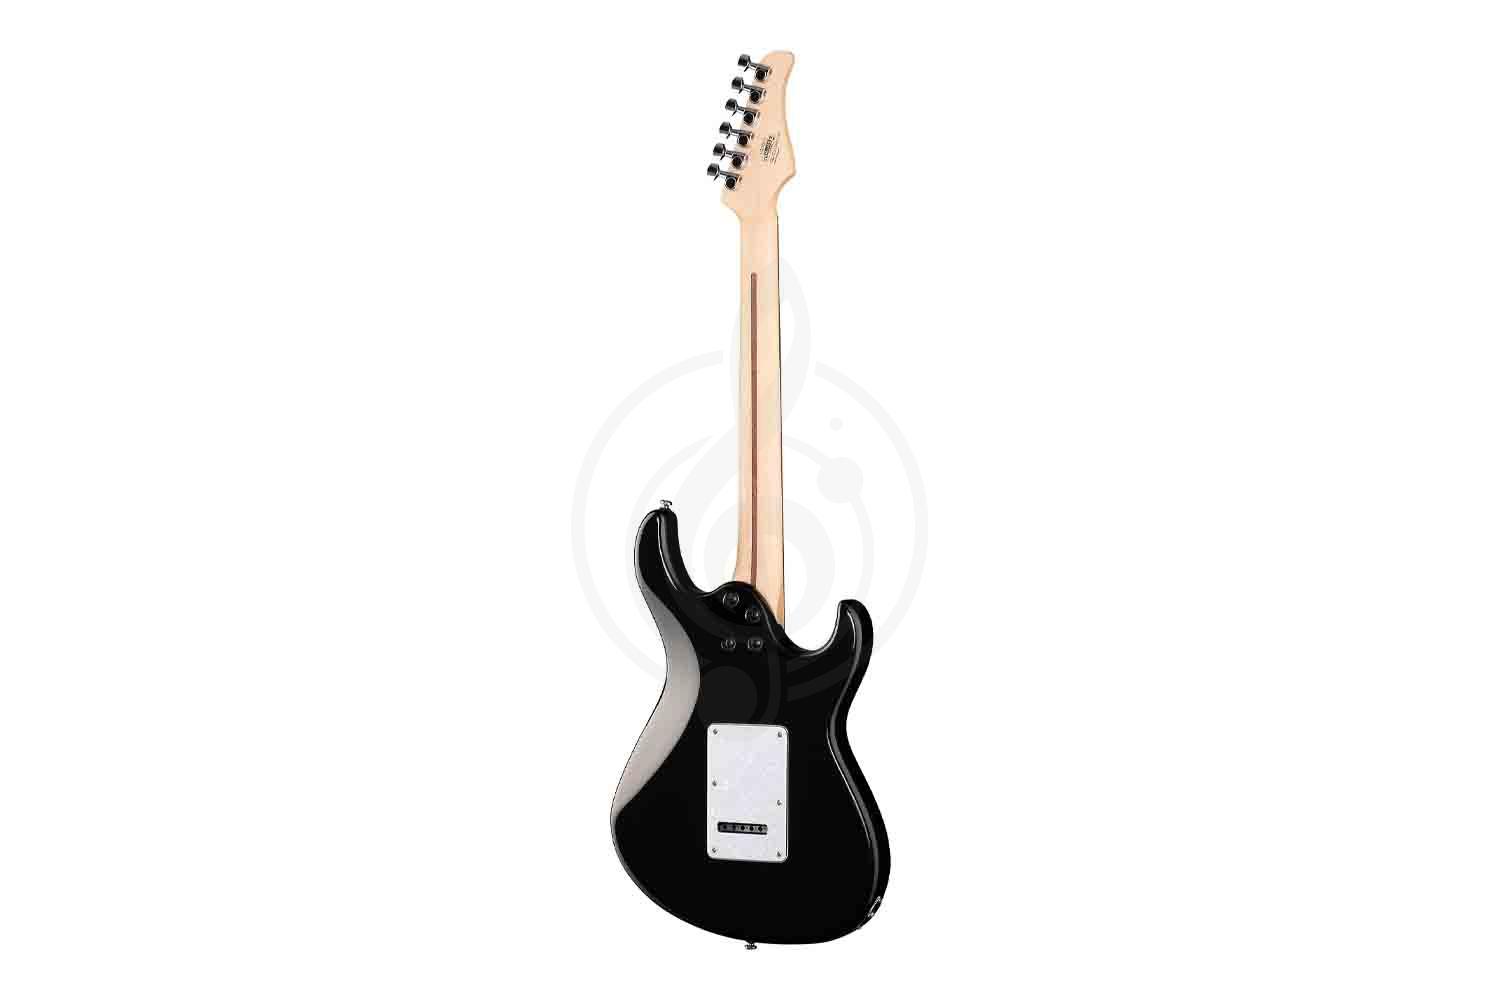 Электрогитара Stratocaster Cort G250-LH-WBAG-BLK G Series - Электрогитара леворукая, черная, с чехлом, Cort G250-LH-WBAG-BLK в магазине DominantaMusic - фото 4